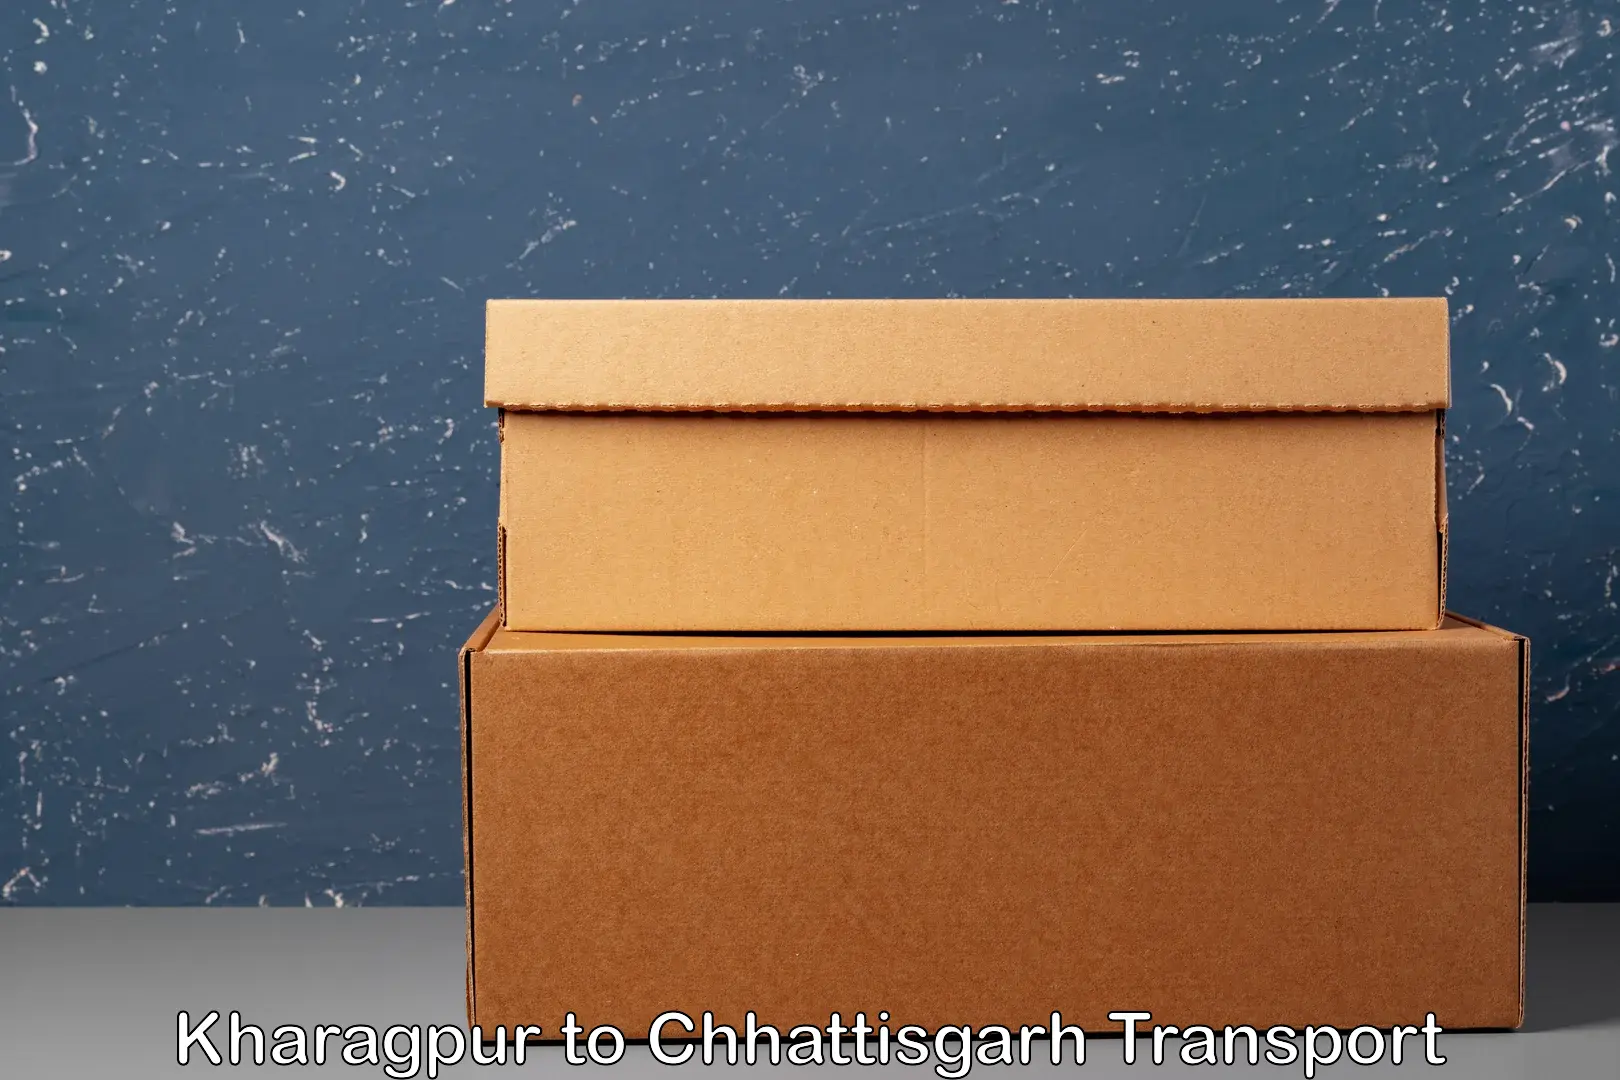 Air freight transport services Kharagpur to Chhattisgarh